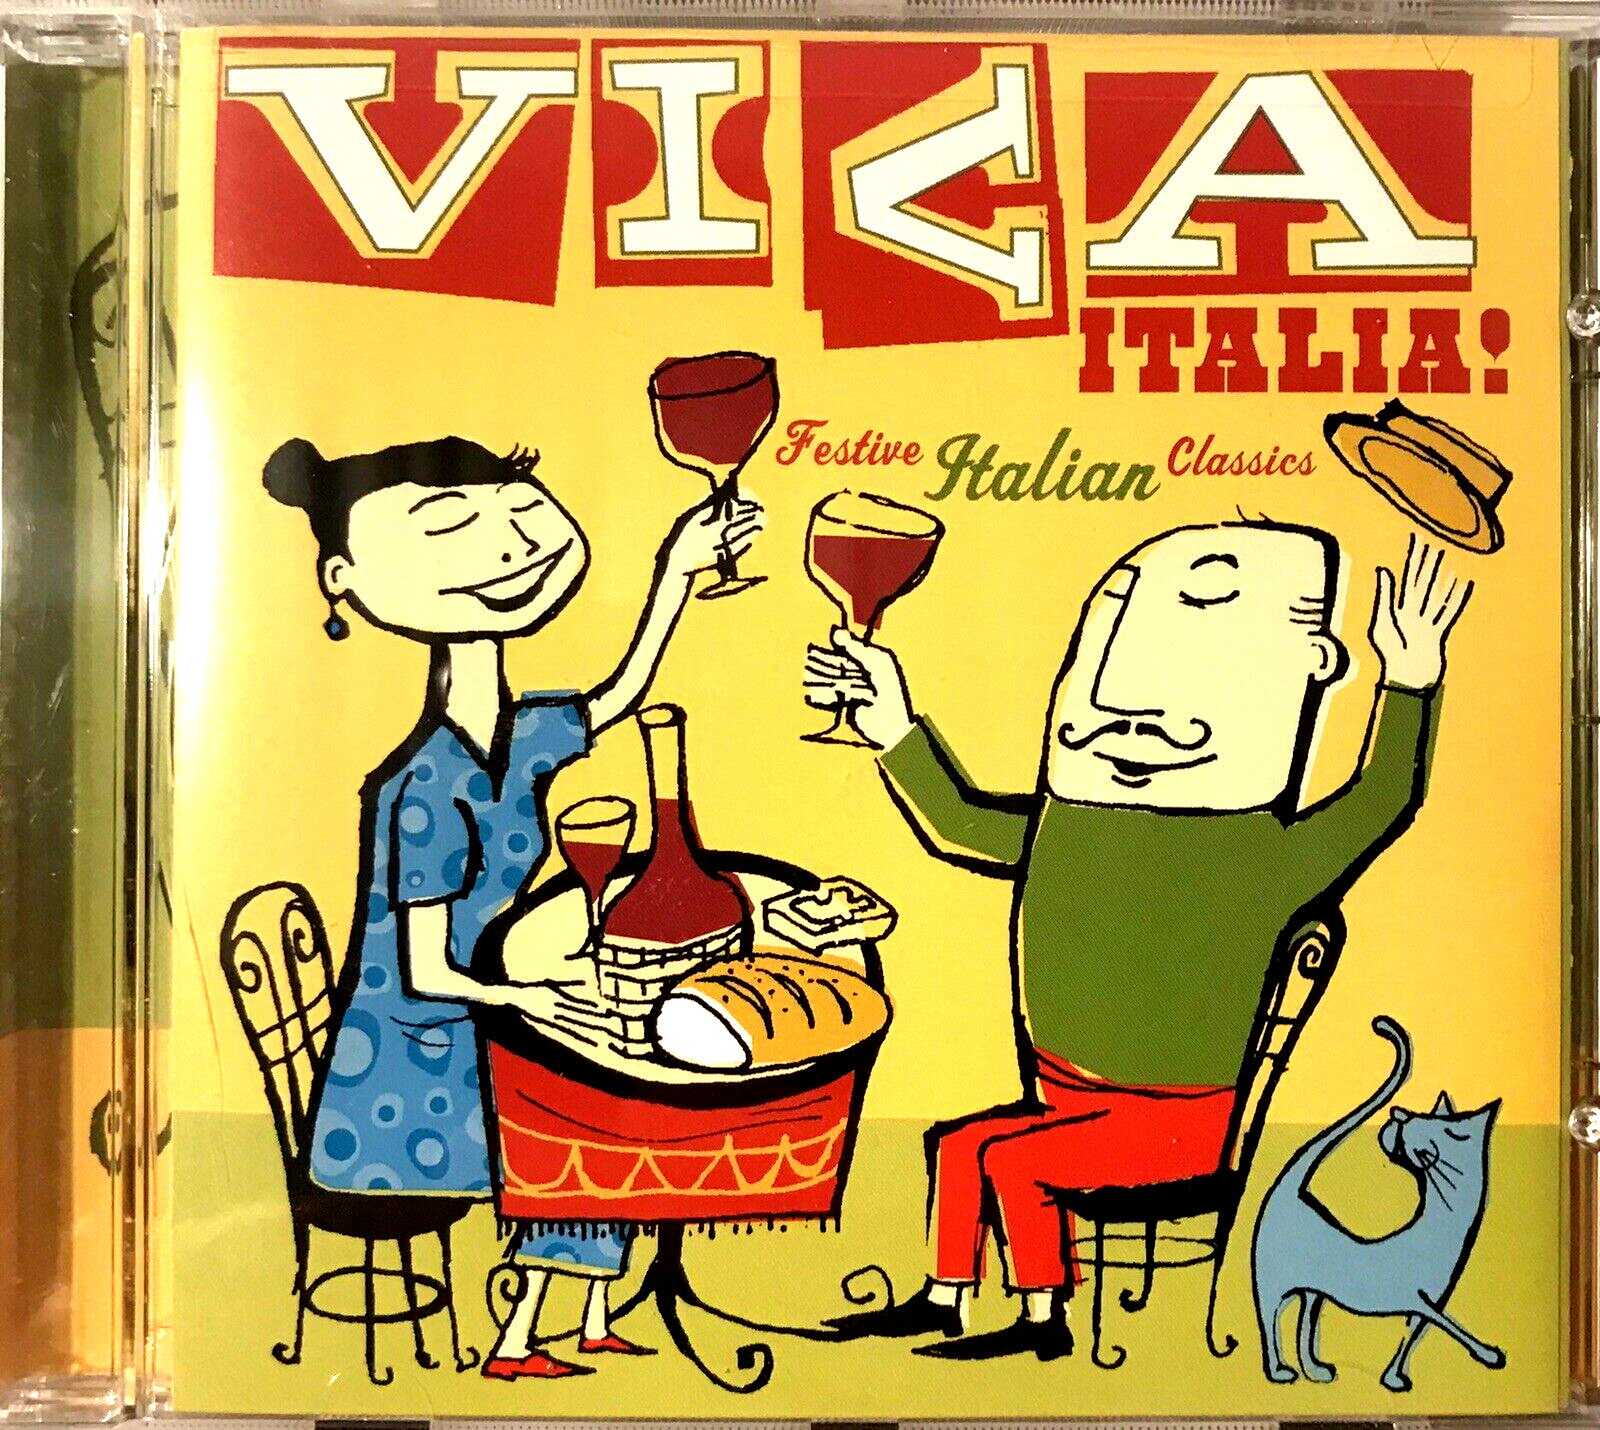 Vintage-Viva Italia: Festive Italian Classics  Various Artists Music CD, (1996)